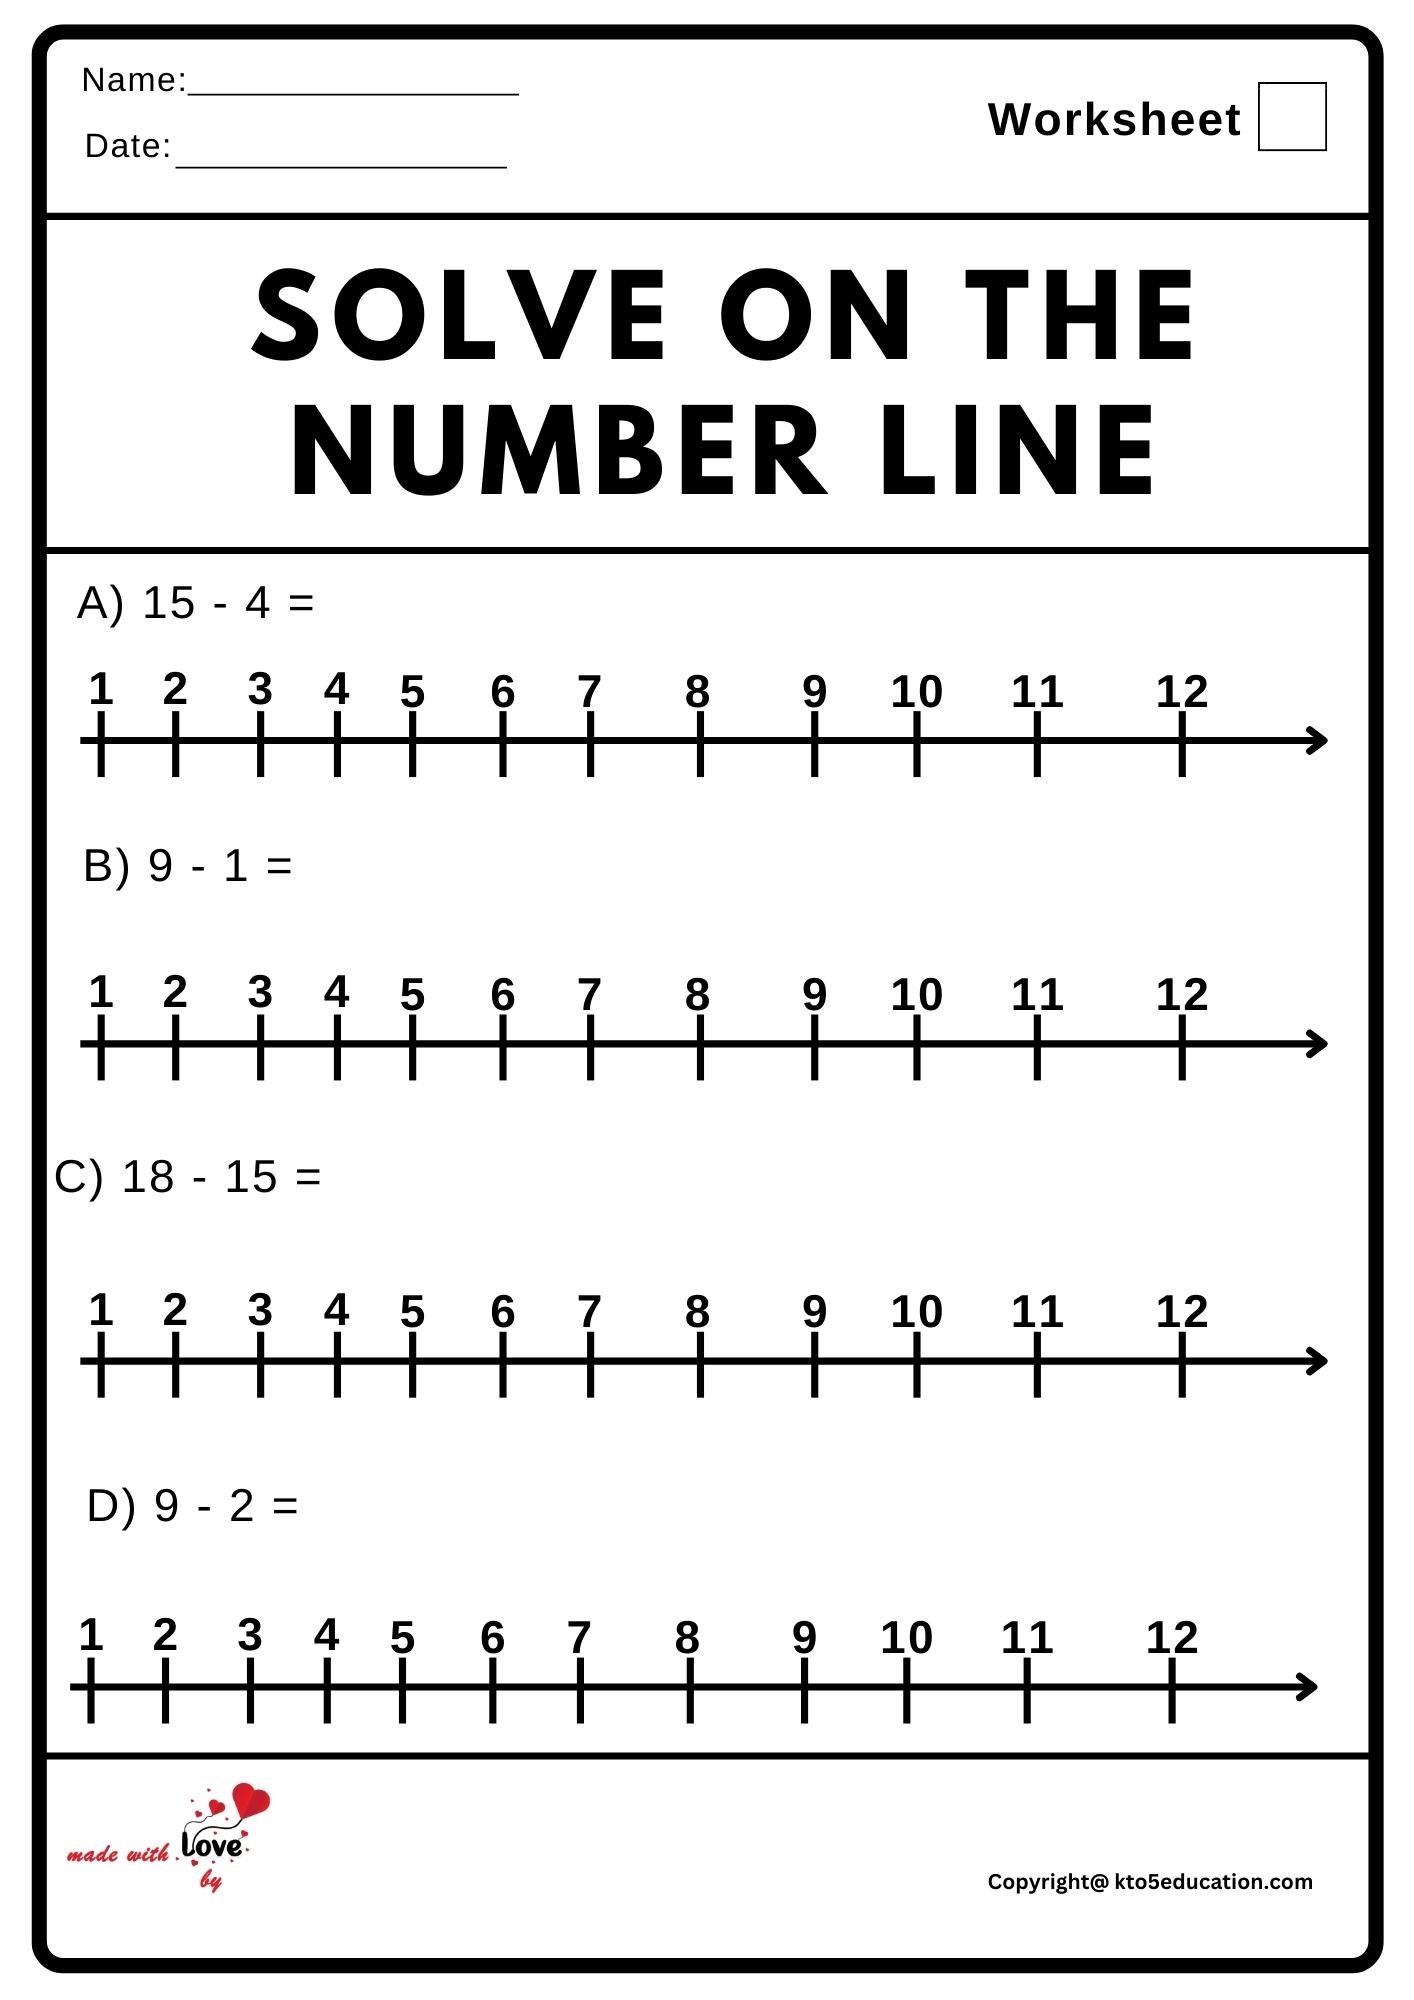 Solve On The Number Line Worksheet